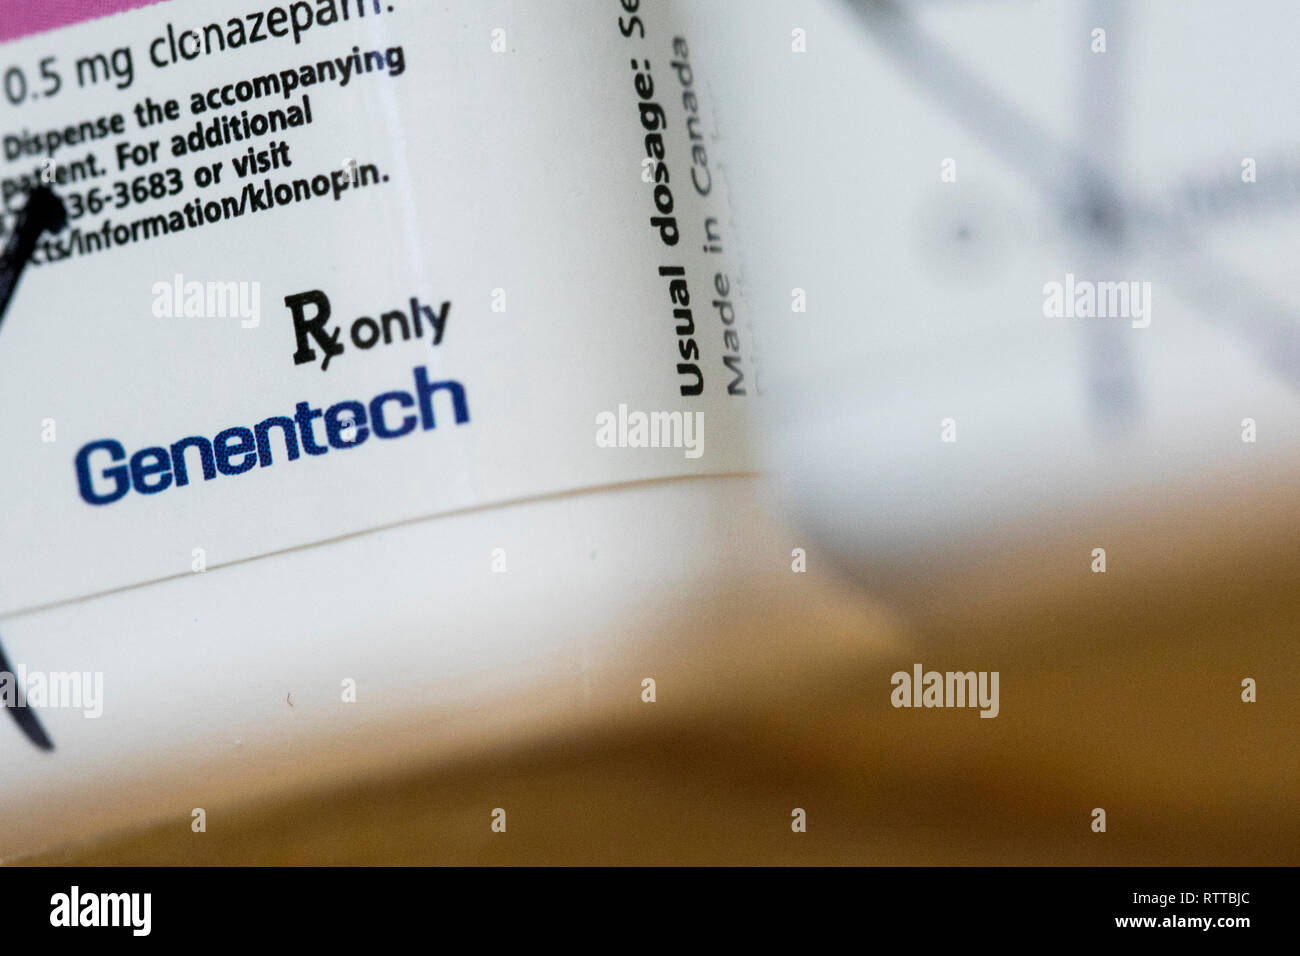 Un logo de Genentech est vu sur l'emballage de produits pharmaceutiques sur ordonnance photographié dans une pharmacie. Banque D'Images